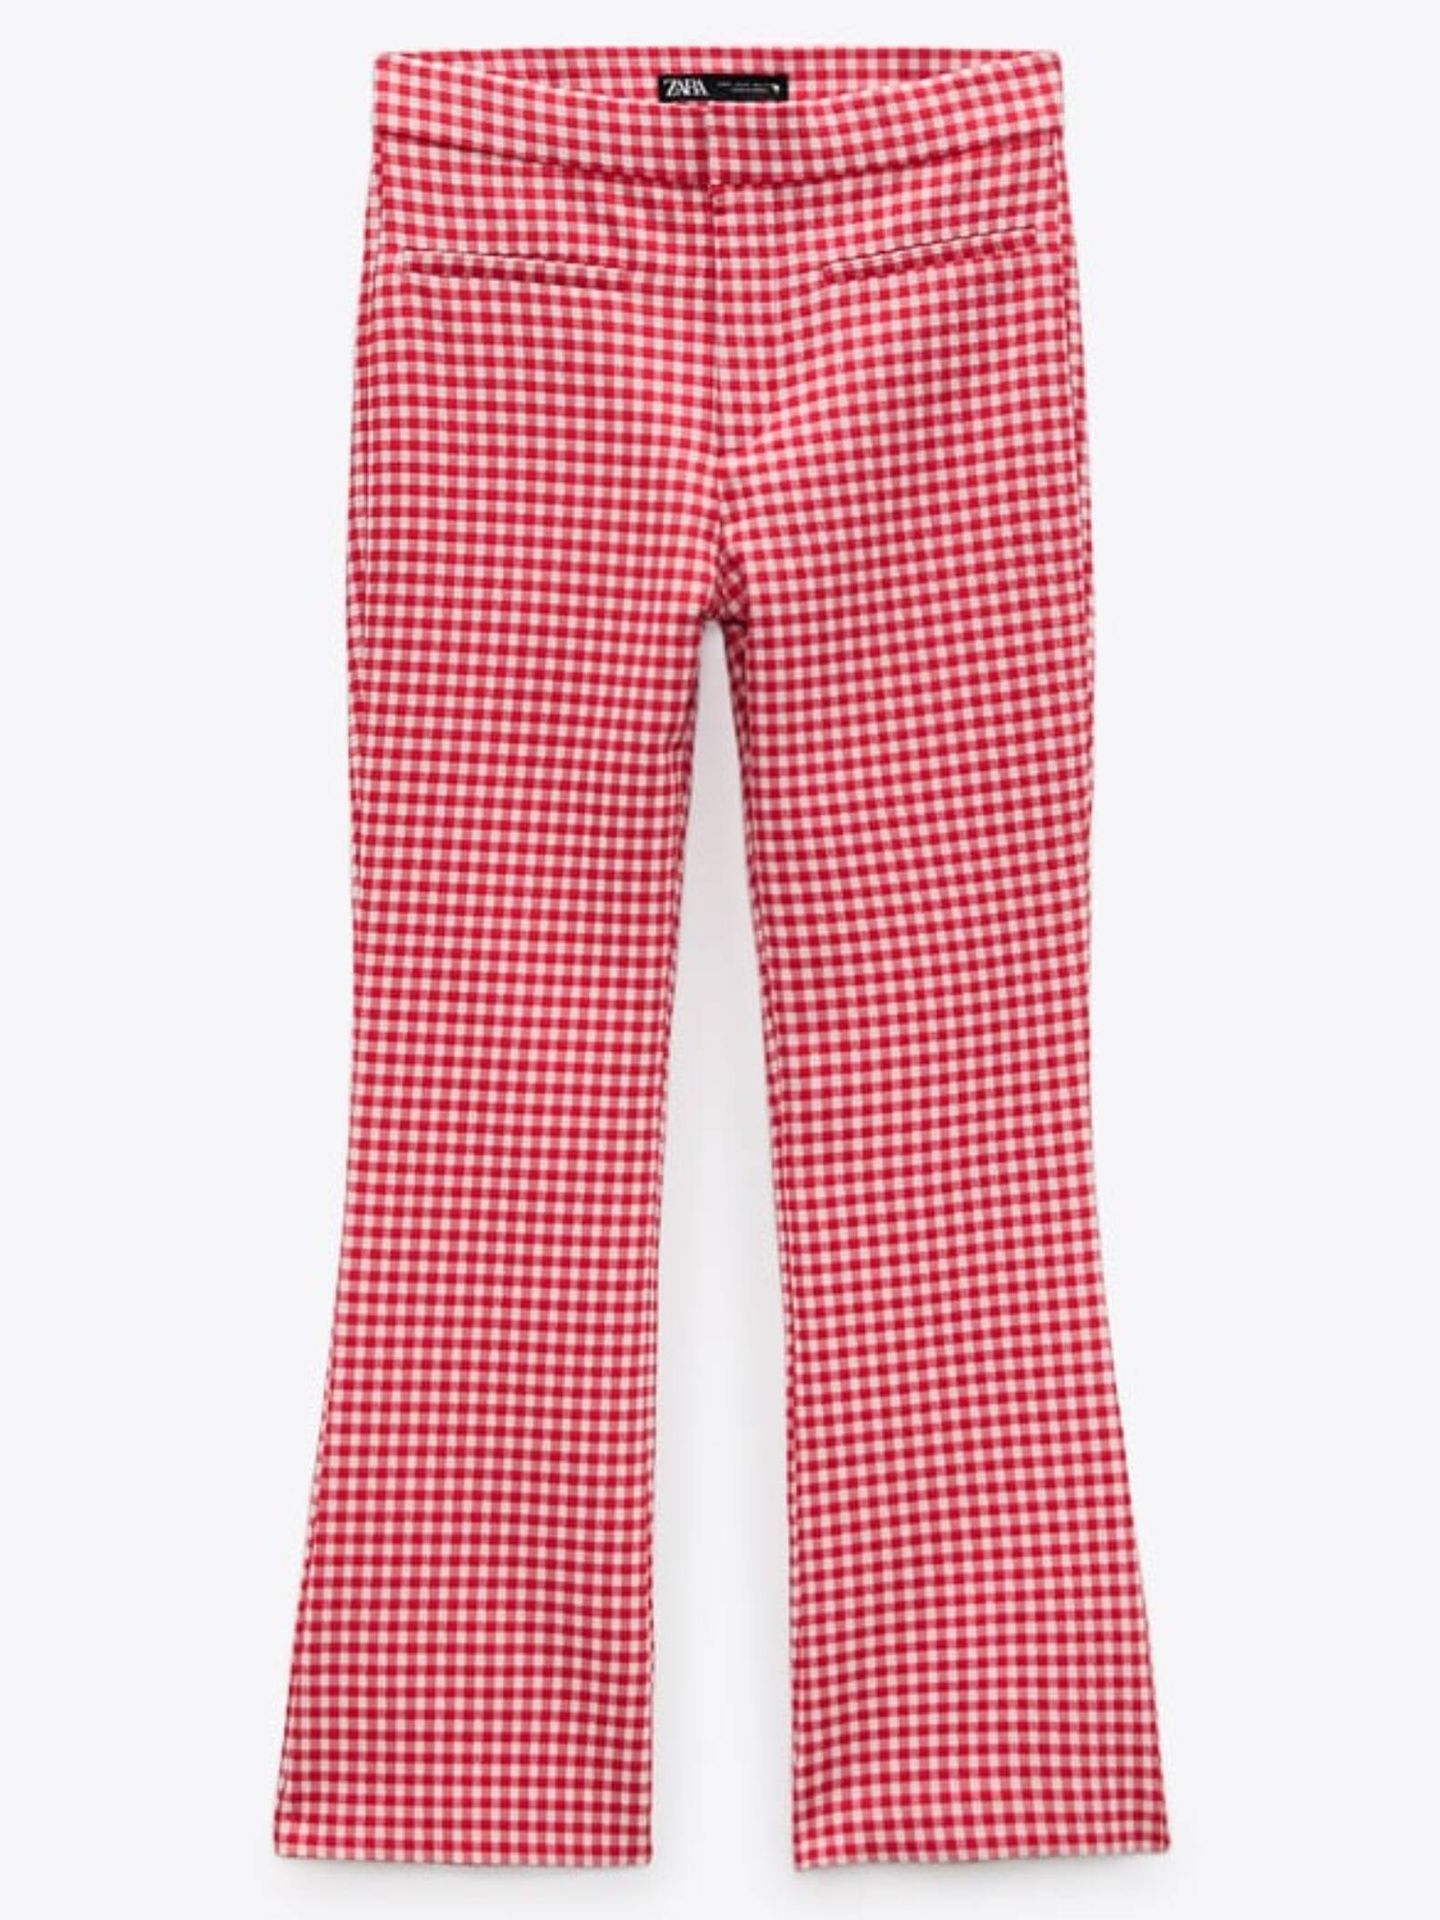 famoso Mediana vamos a hacerlo El rojo se vuelve más chic con estos nuevos pantalones de Zara